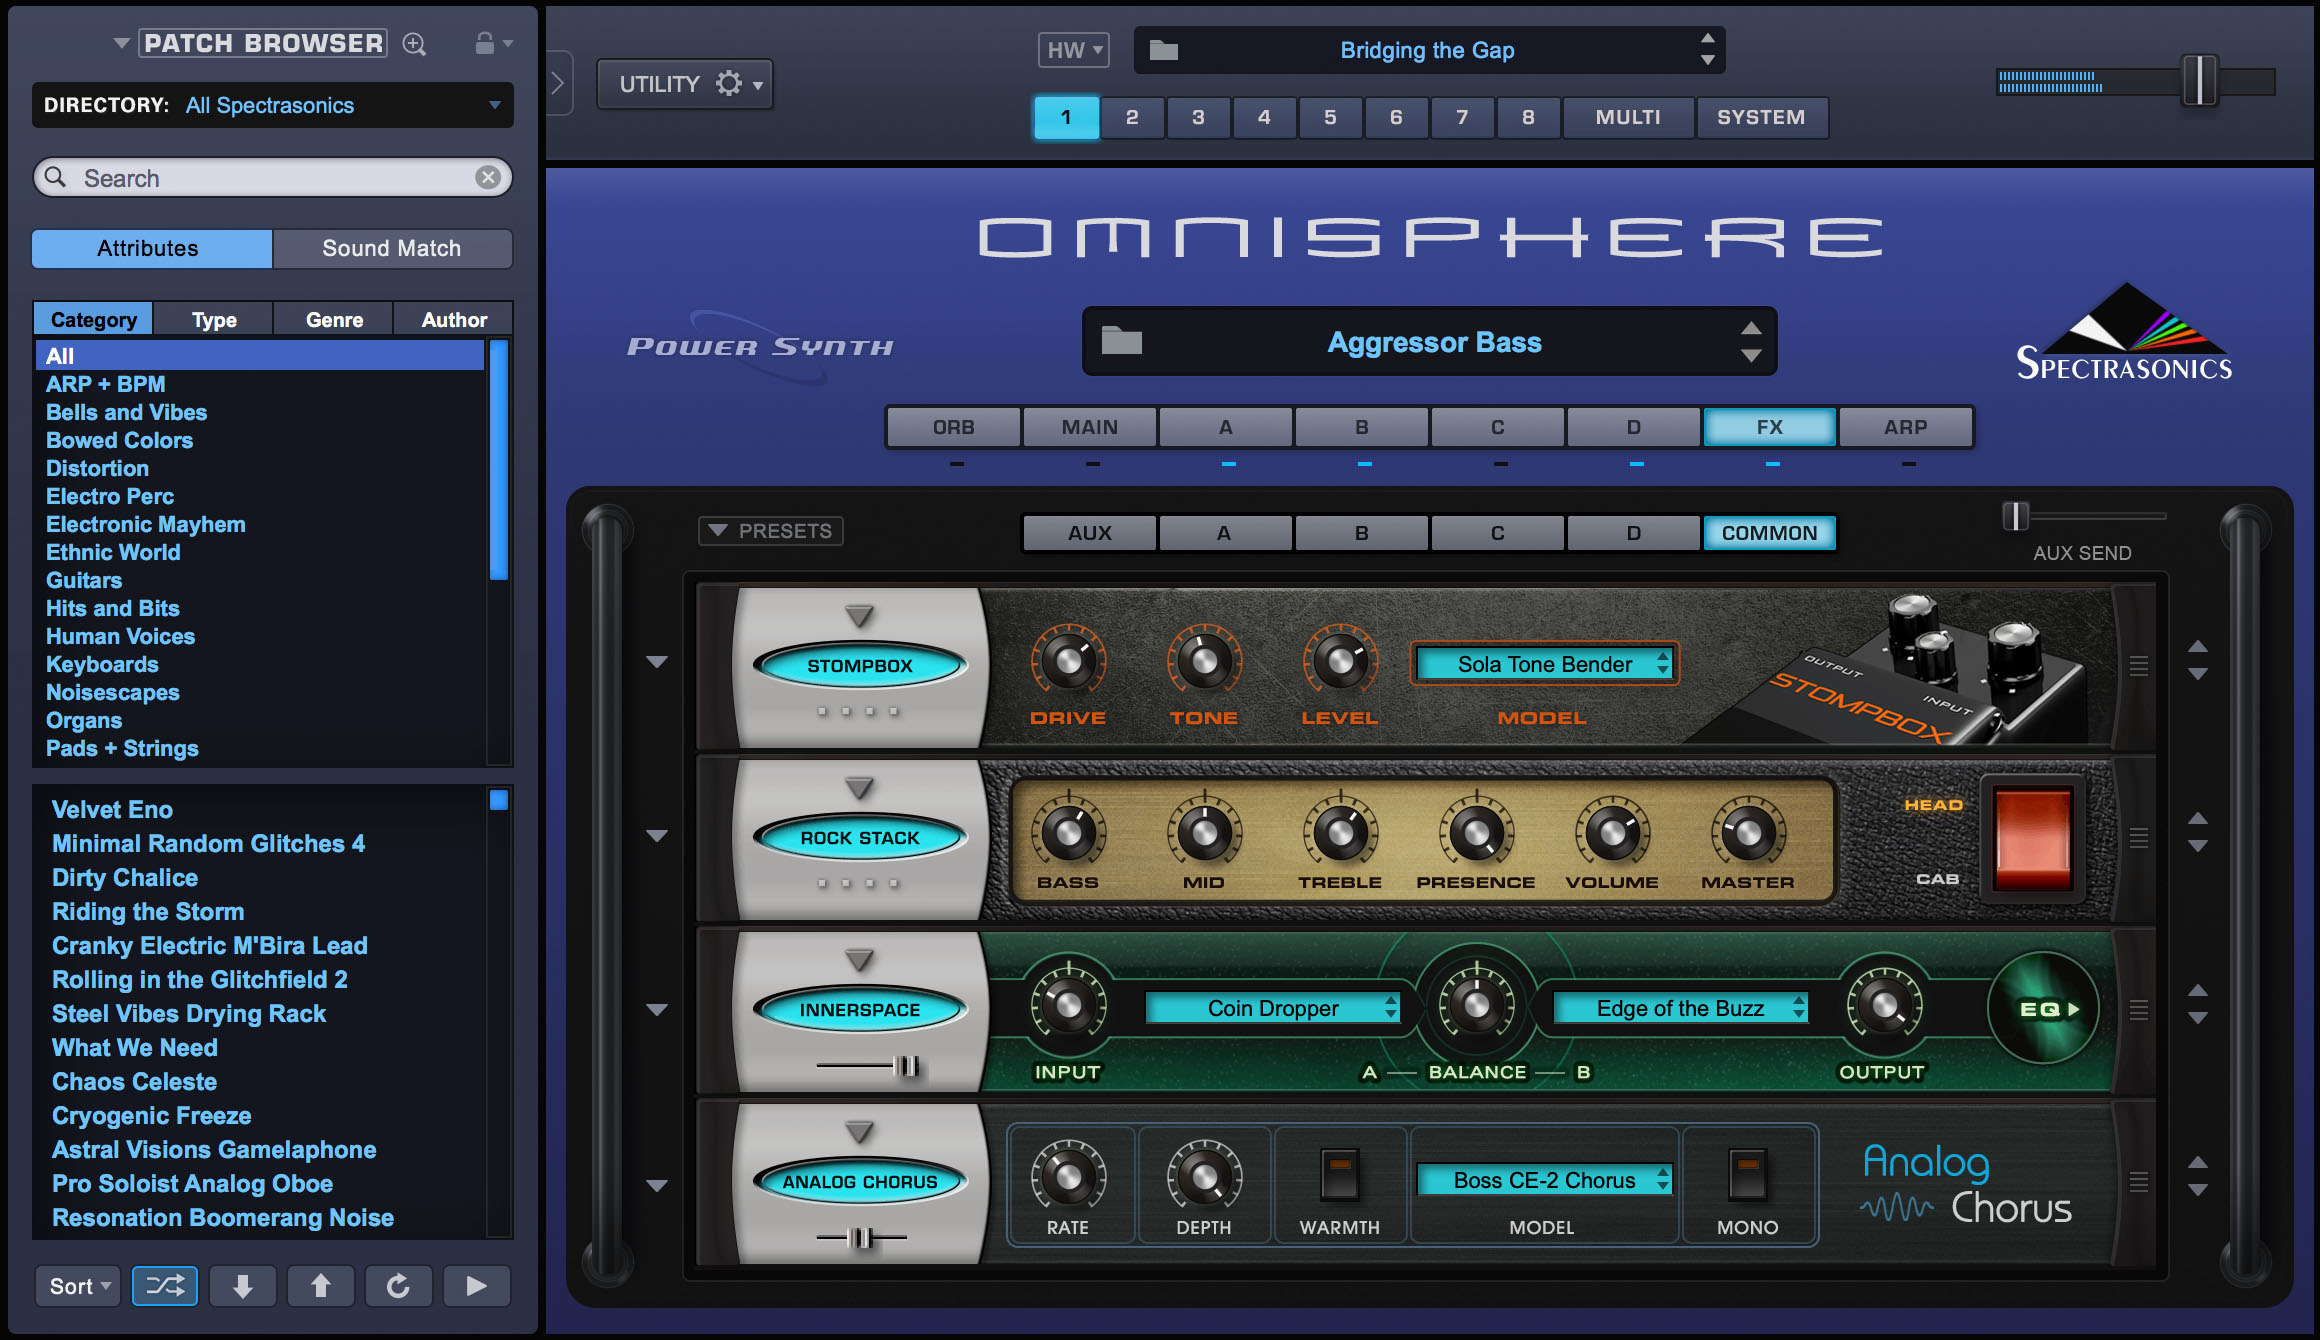 omnisphere 1 demo download pc